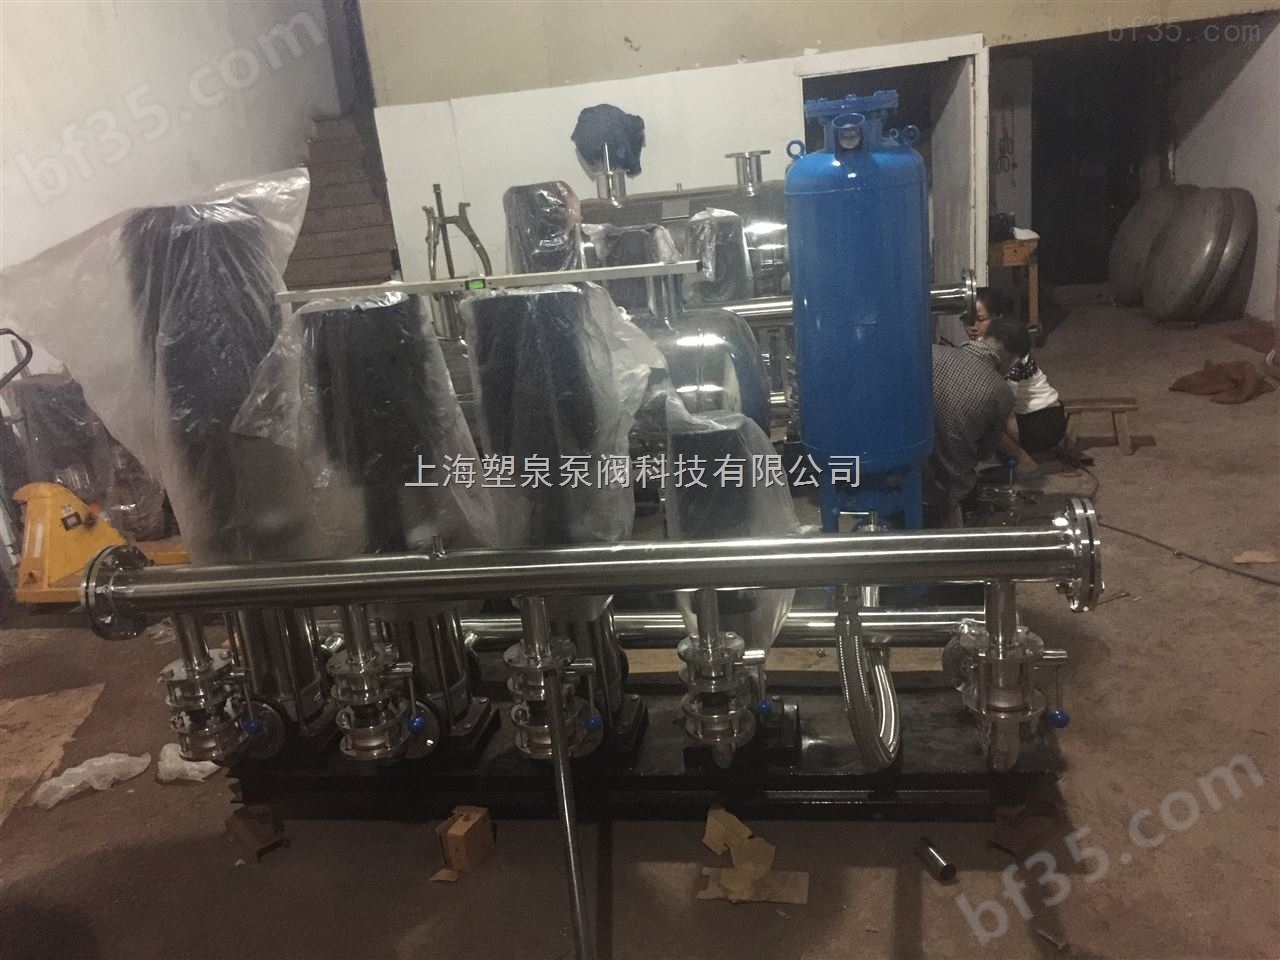 供应SQB25/2-4/2-0.32上海自动给水设备,生活自动给水设备,自动给水设备厂家